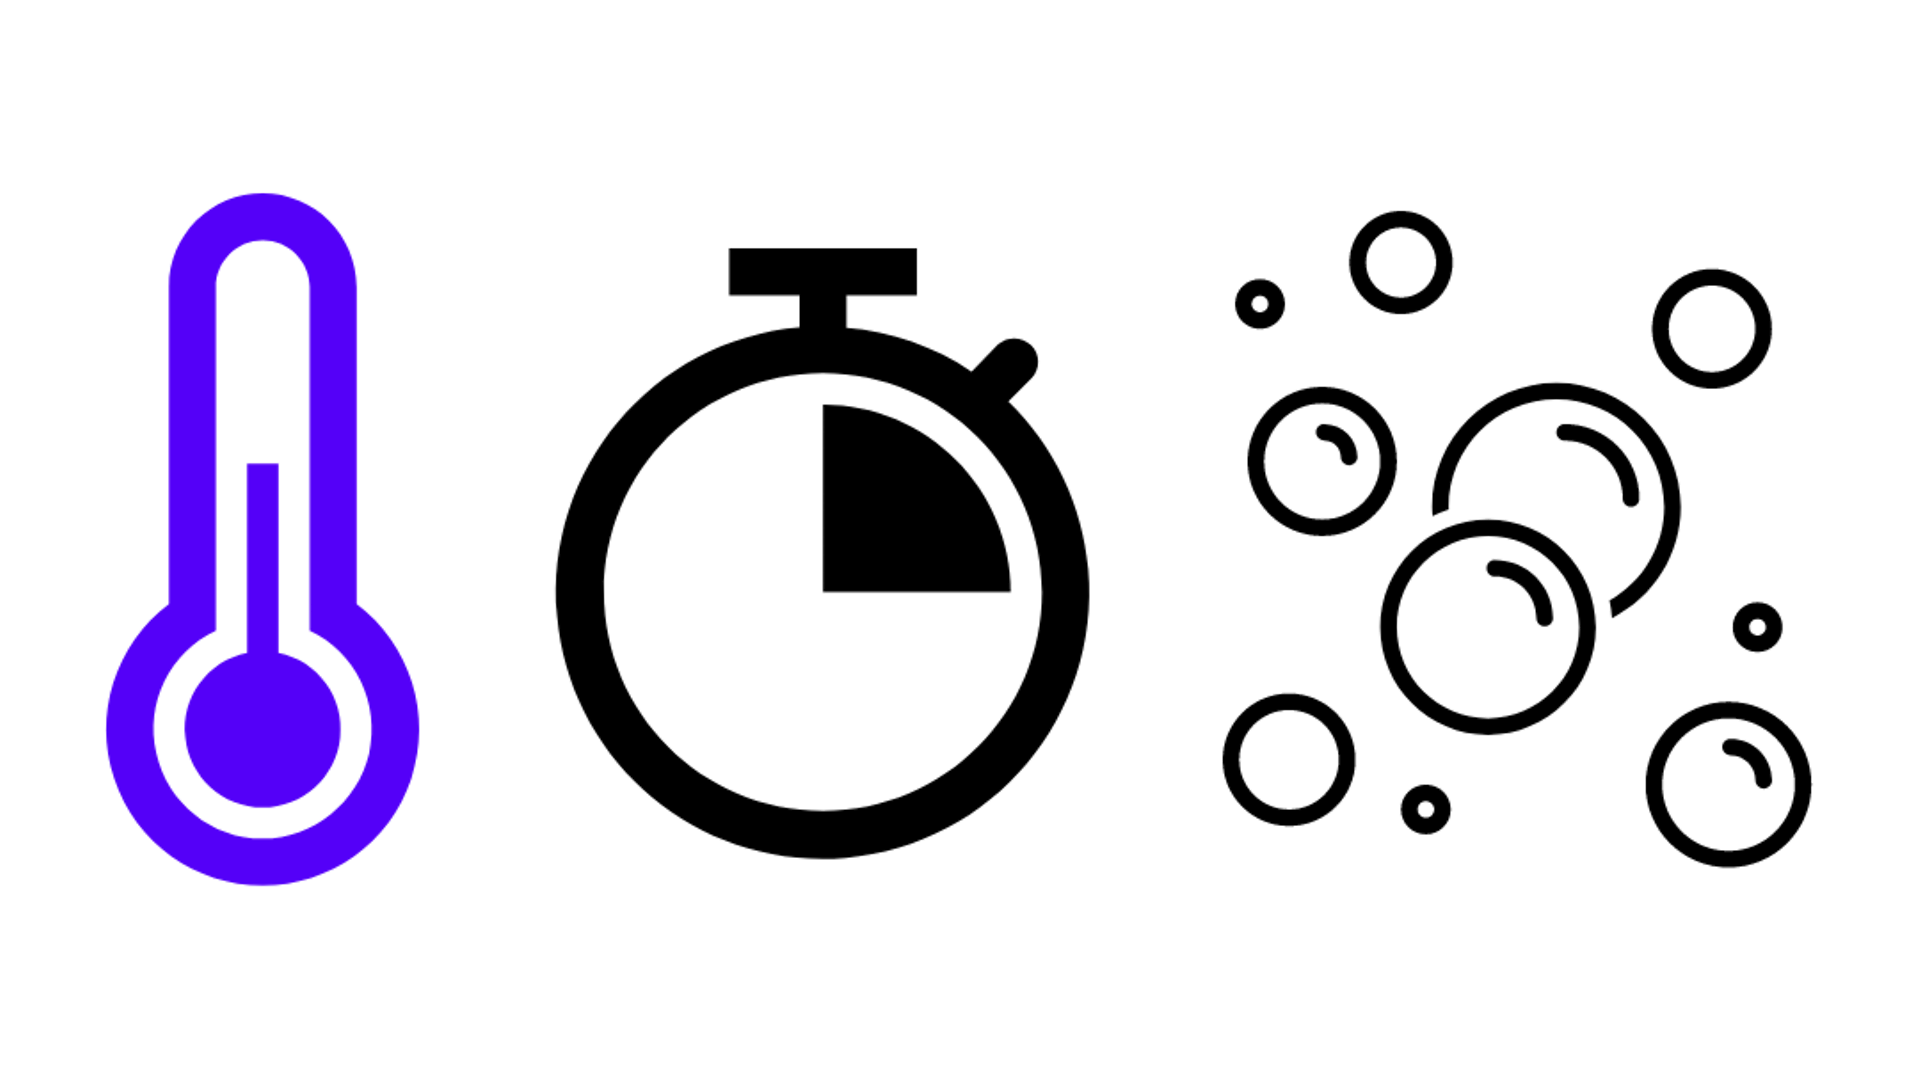 синий символ термометра, символ часов, четверть часа и символ пены